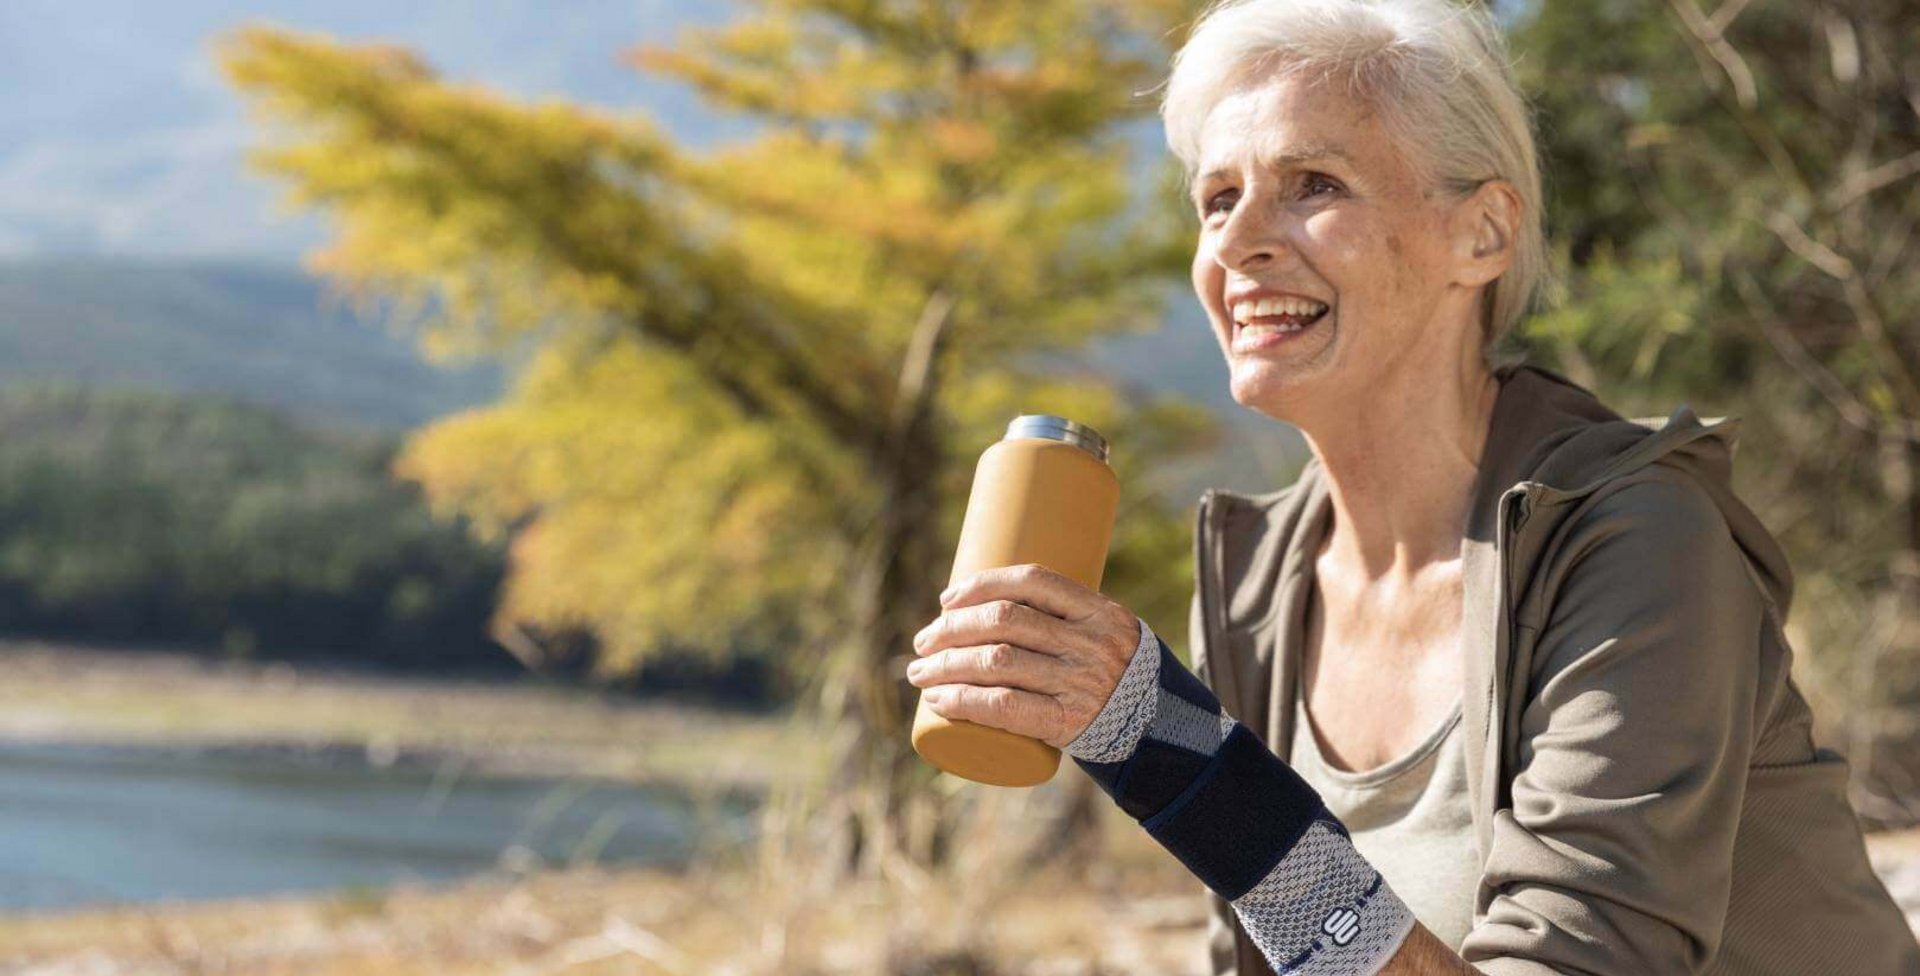 Auf dem Bild ist eine ältere Frau mit Getränk an einem See zu sehen, die beim Wandern eine ManuTrain Handgelenkbandage trägt, um Schmerzen im Handgelenk zu lindern.